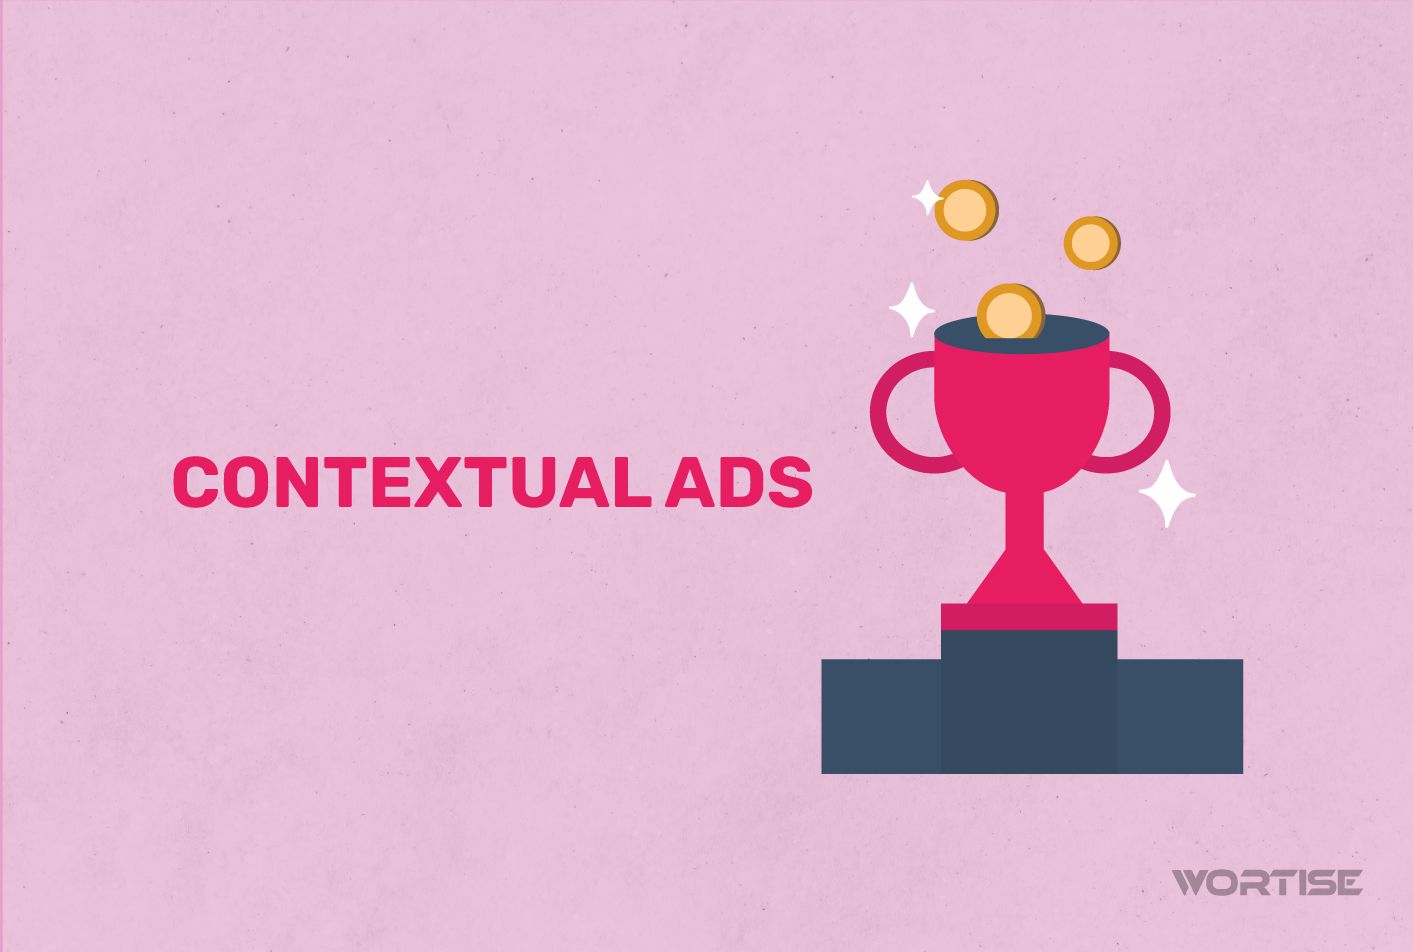 El contexto importa: Por qué los Contextual Ads son un win-win para publishers y advertisers